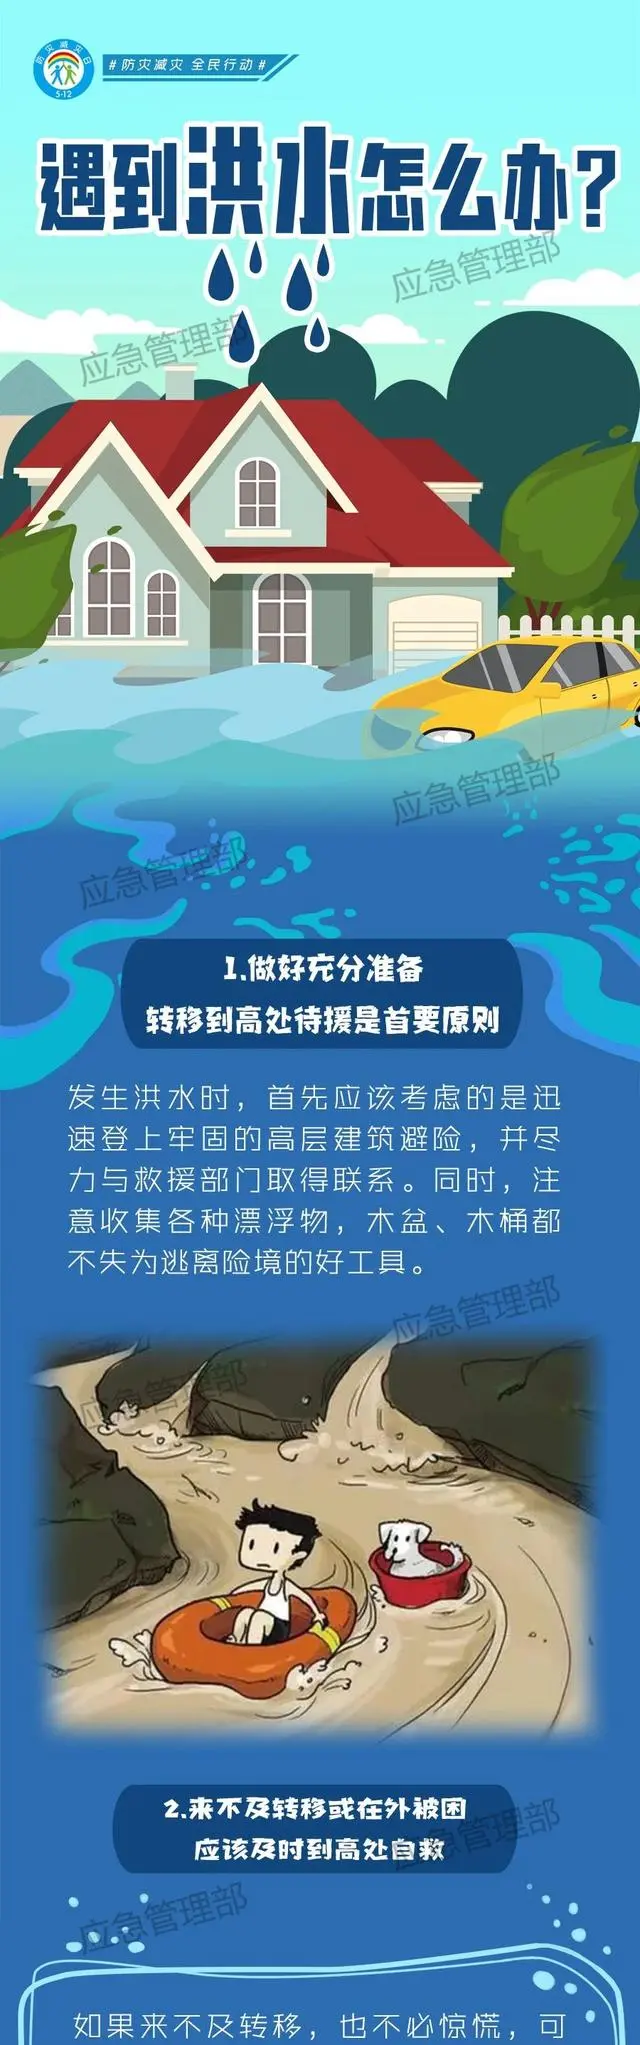 广东14地的雨已下了整月“配额”_广东14地的雨已下了整月“配额”_广东14地的雨已下了整月“配额”